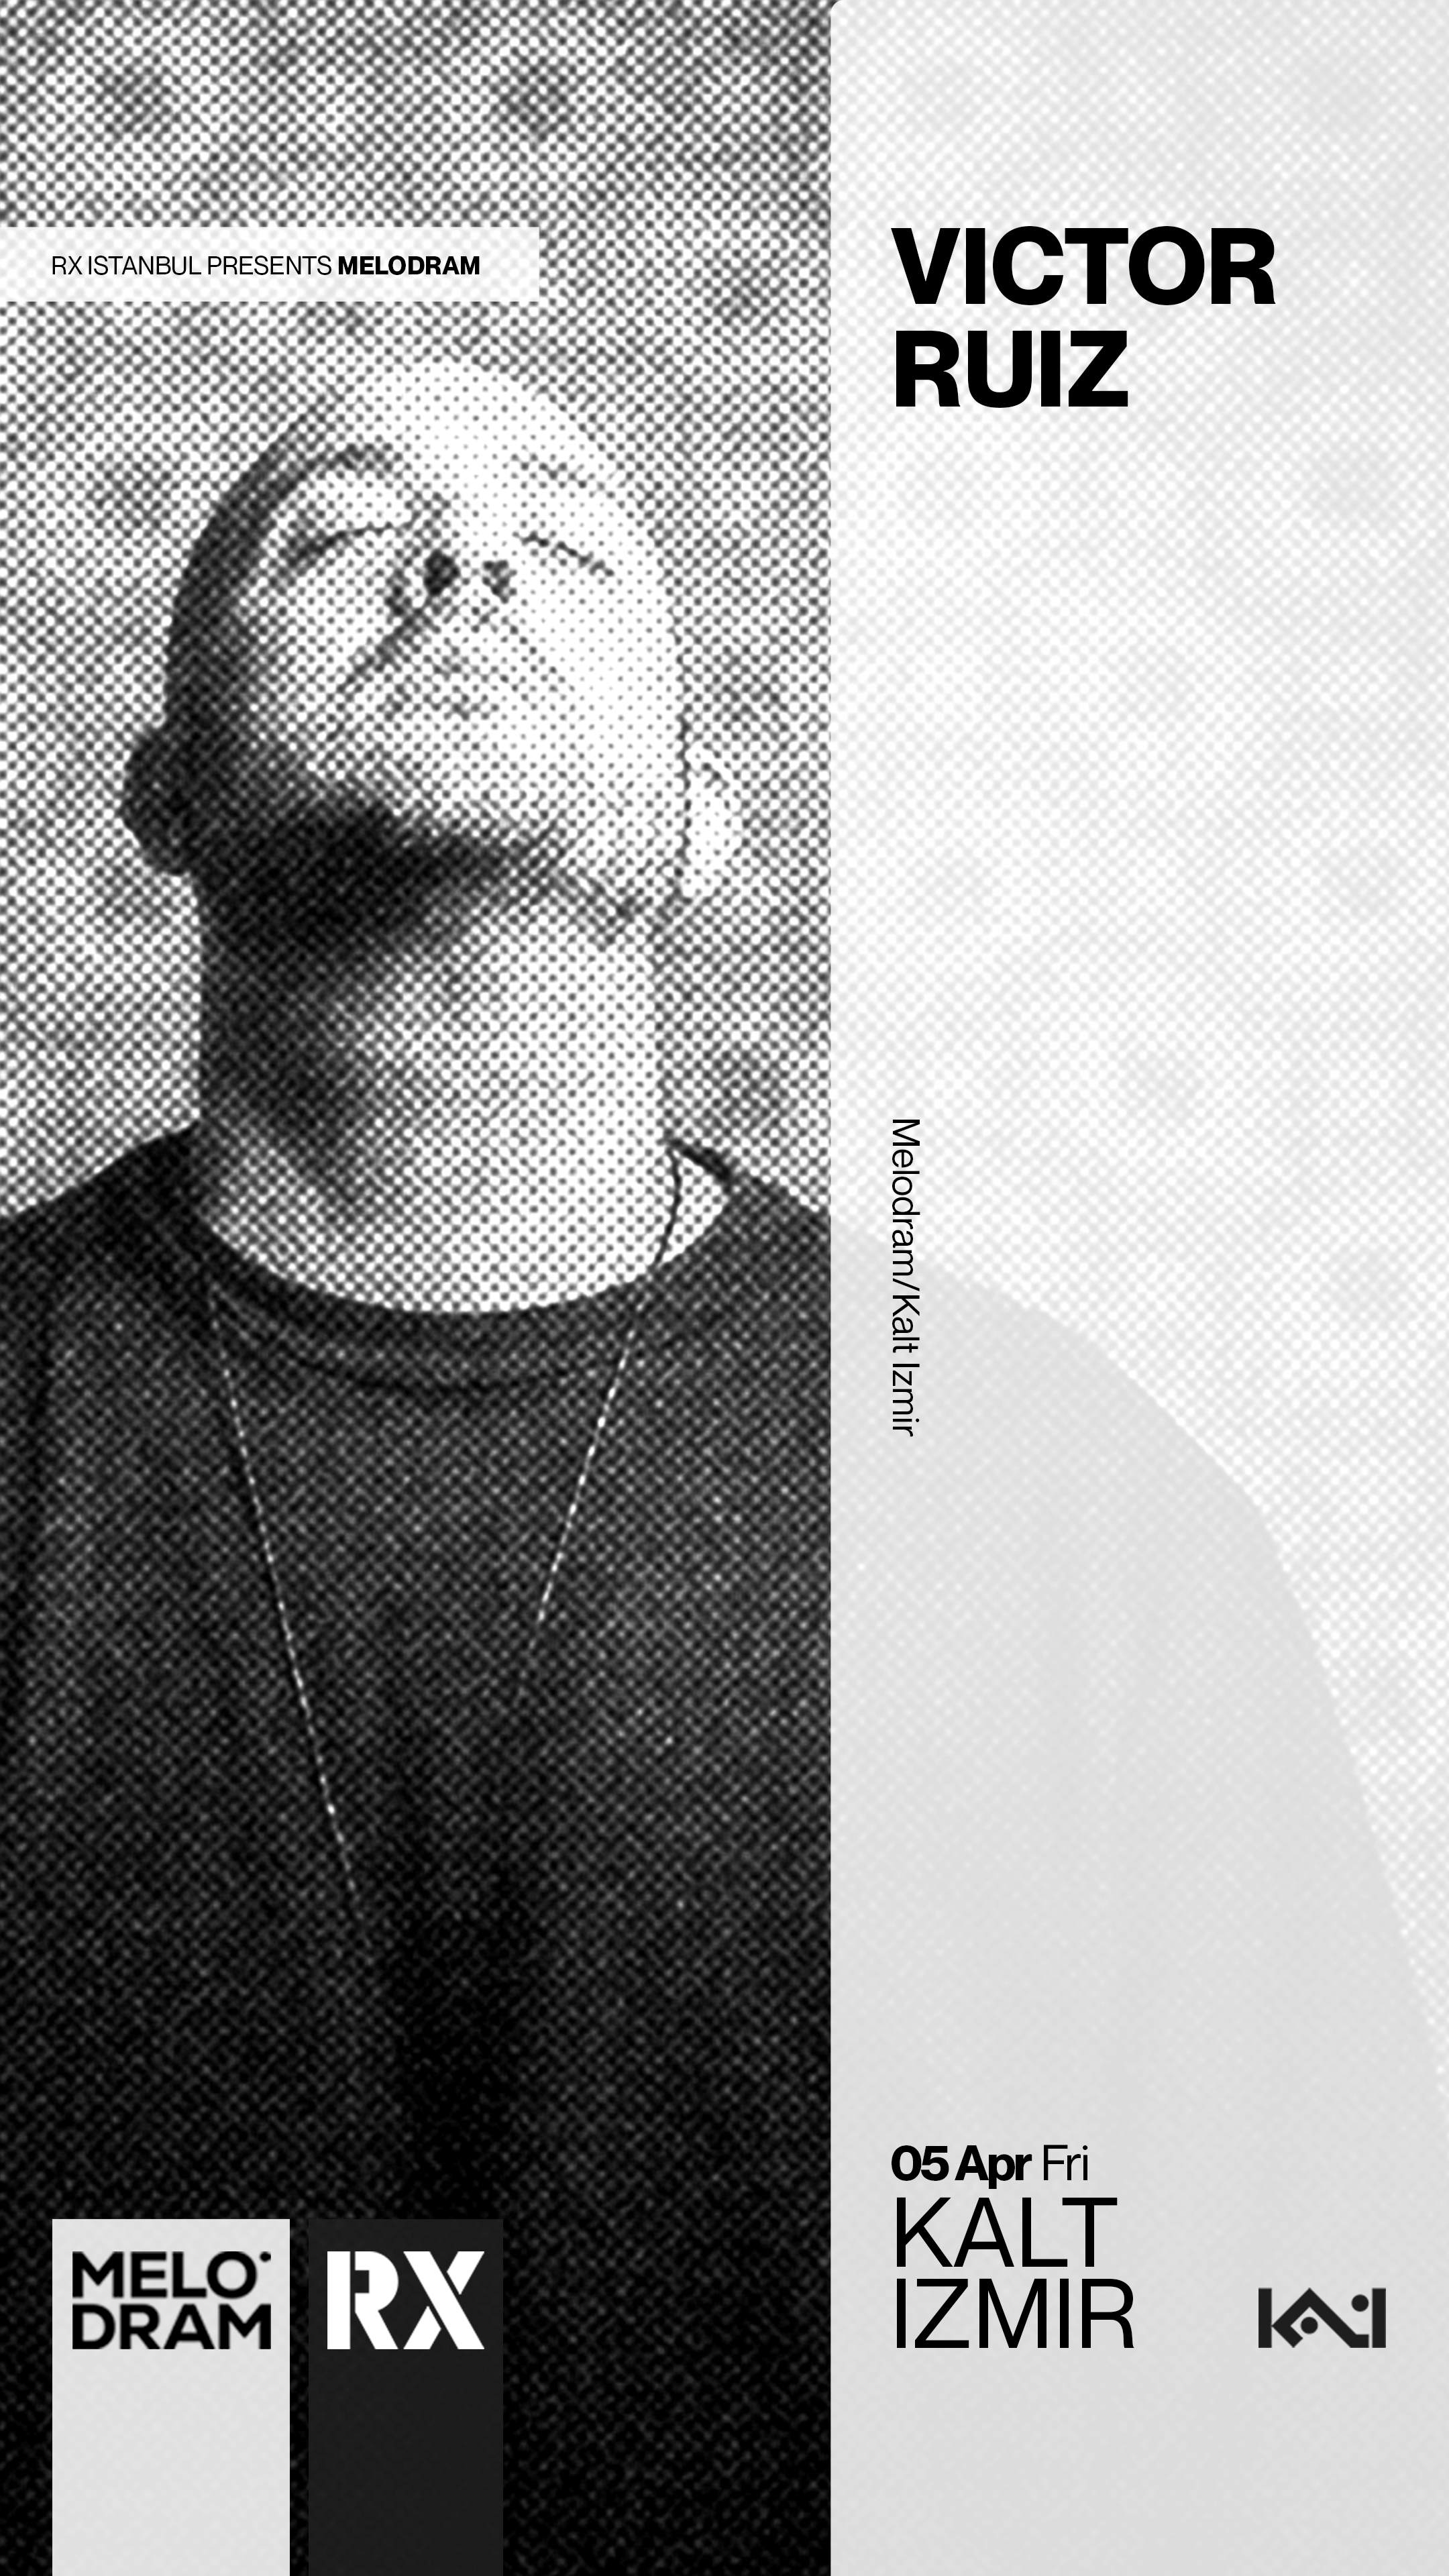 RX presents MELODRAM: Victor Ruiz - Página frontal